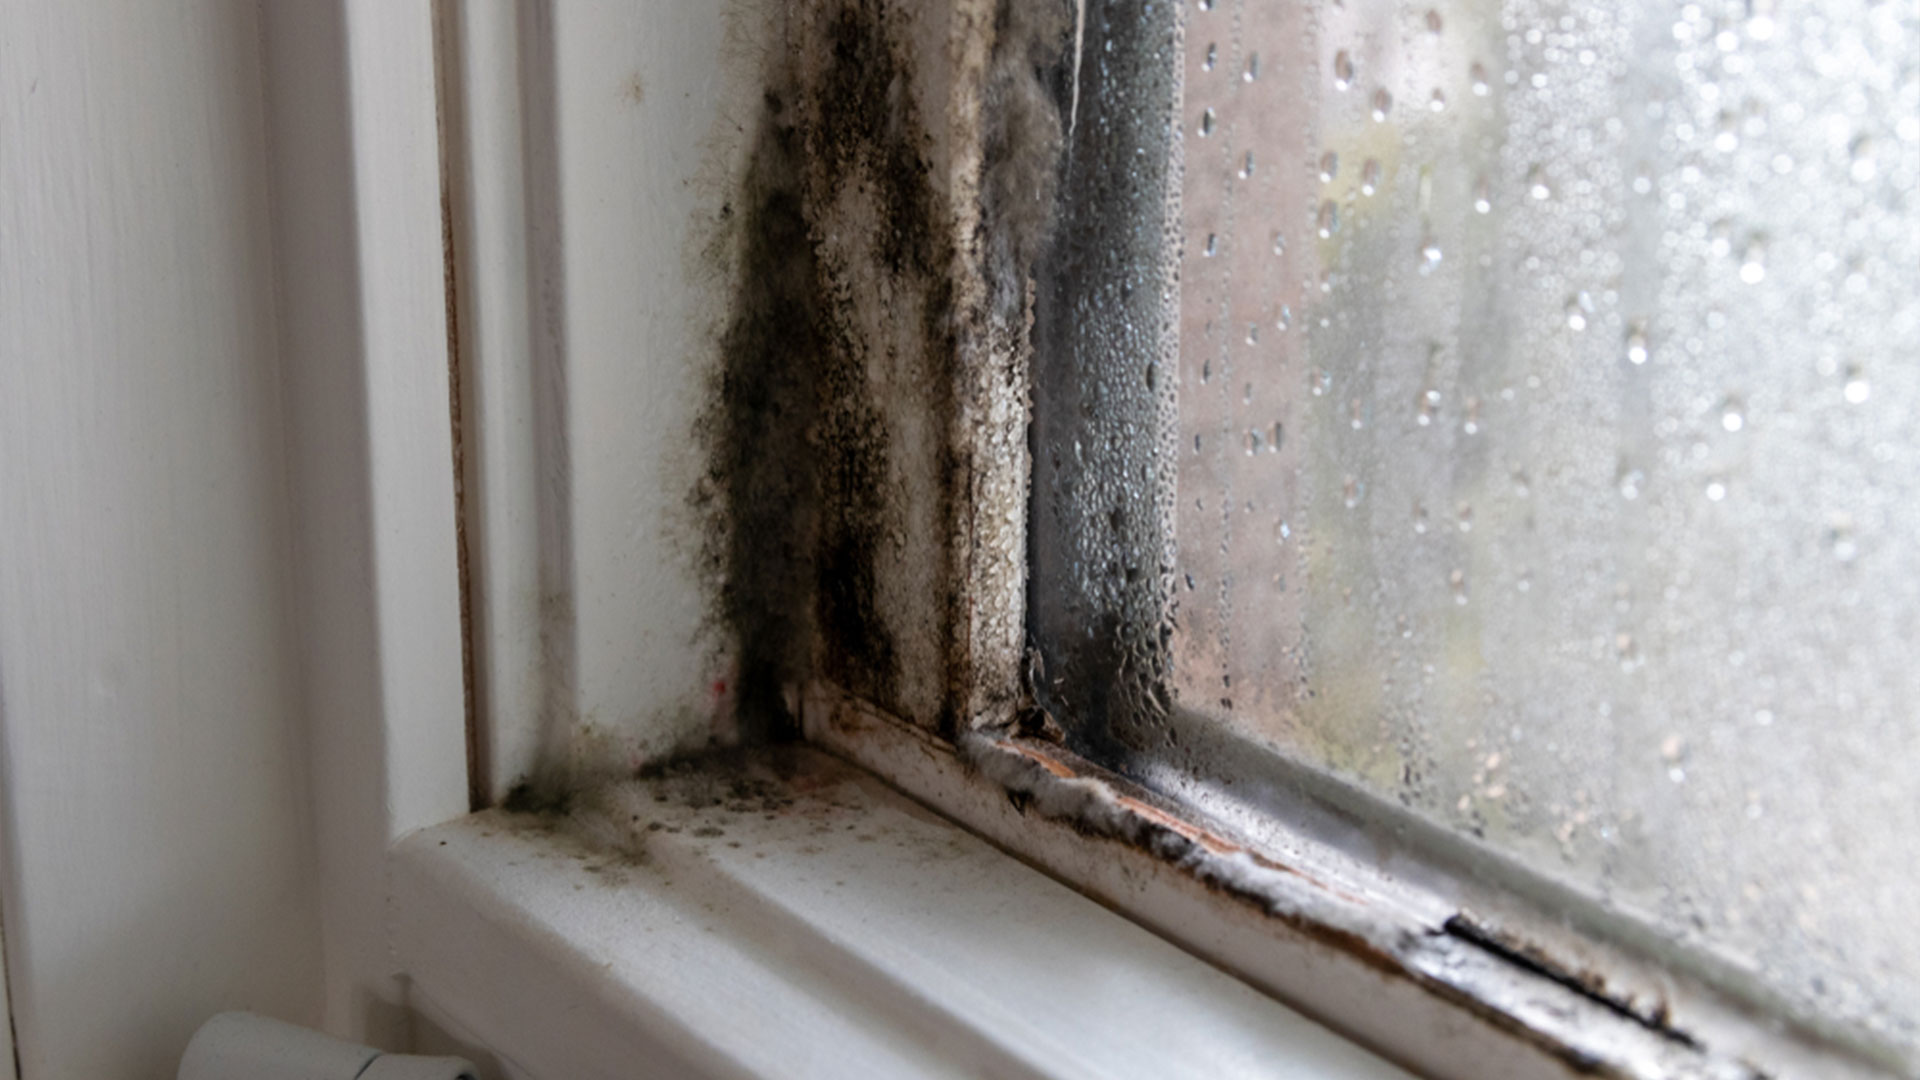 Mold Growing in Bathroom Window Sill